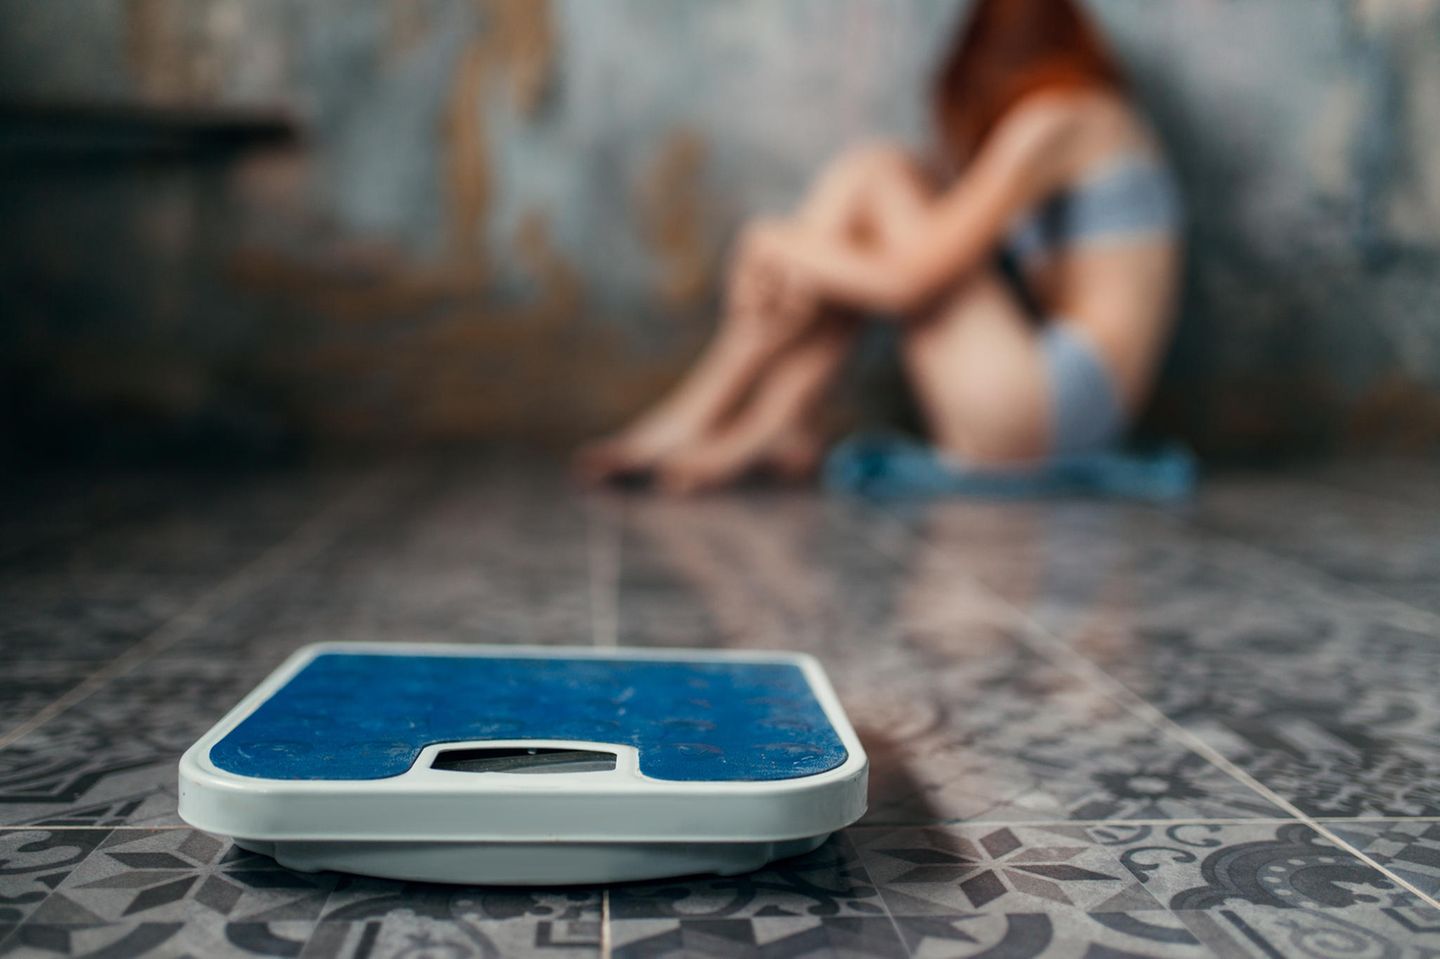 Magersucht: Mädchen kauert auf dem Boden, vor ihr eine Waage